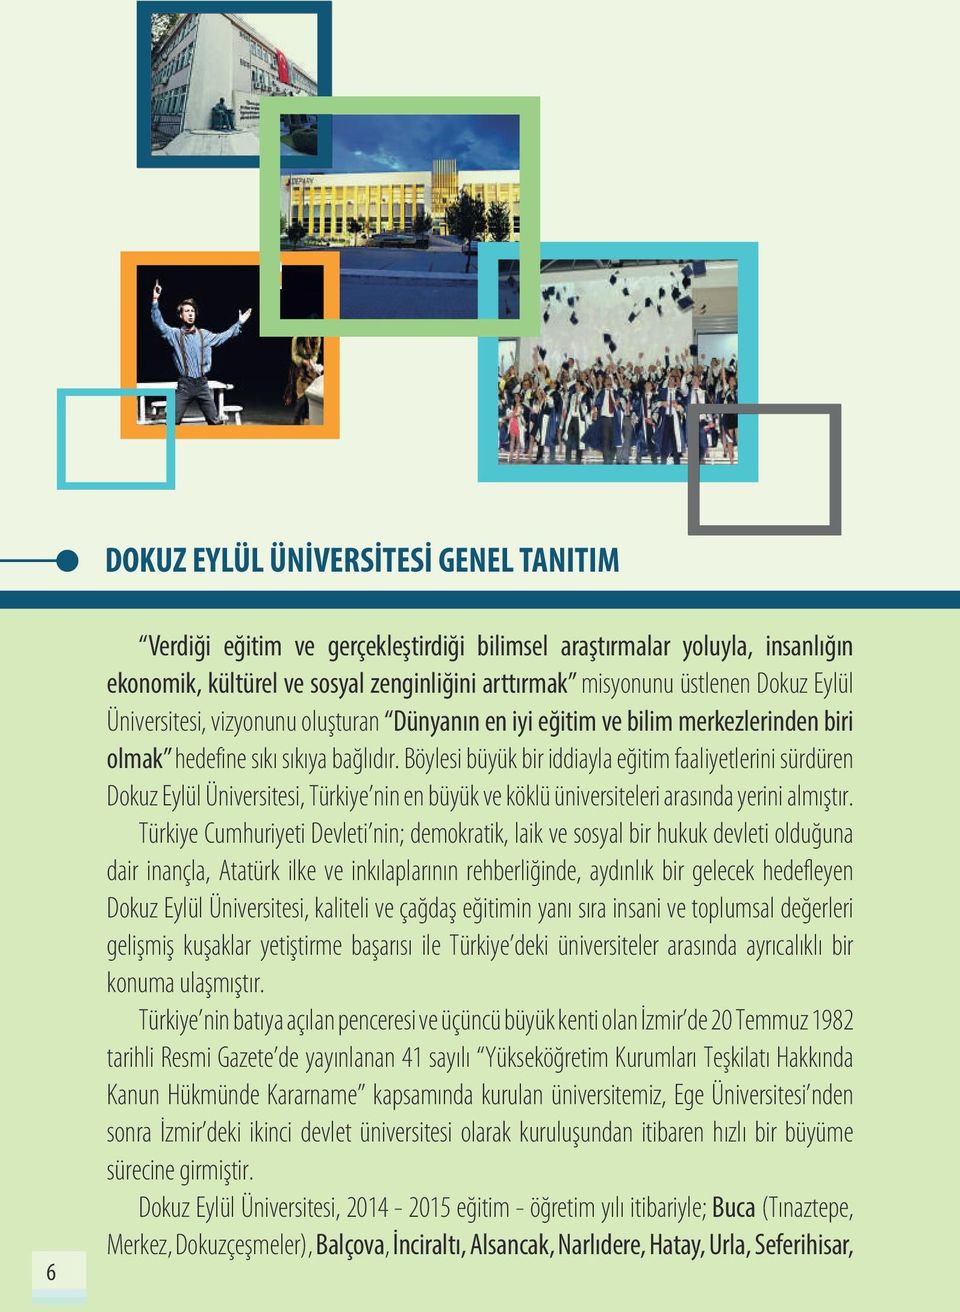 Böylesi büyük bir iddiayla eğitim faaliyetlerini sürdüren Dokuz Eylül Üniversitesi, Türkiye nin en büyük ve köklü üniversiteleri arasında yerini almıştır.